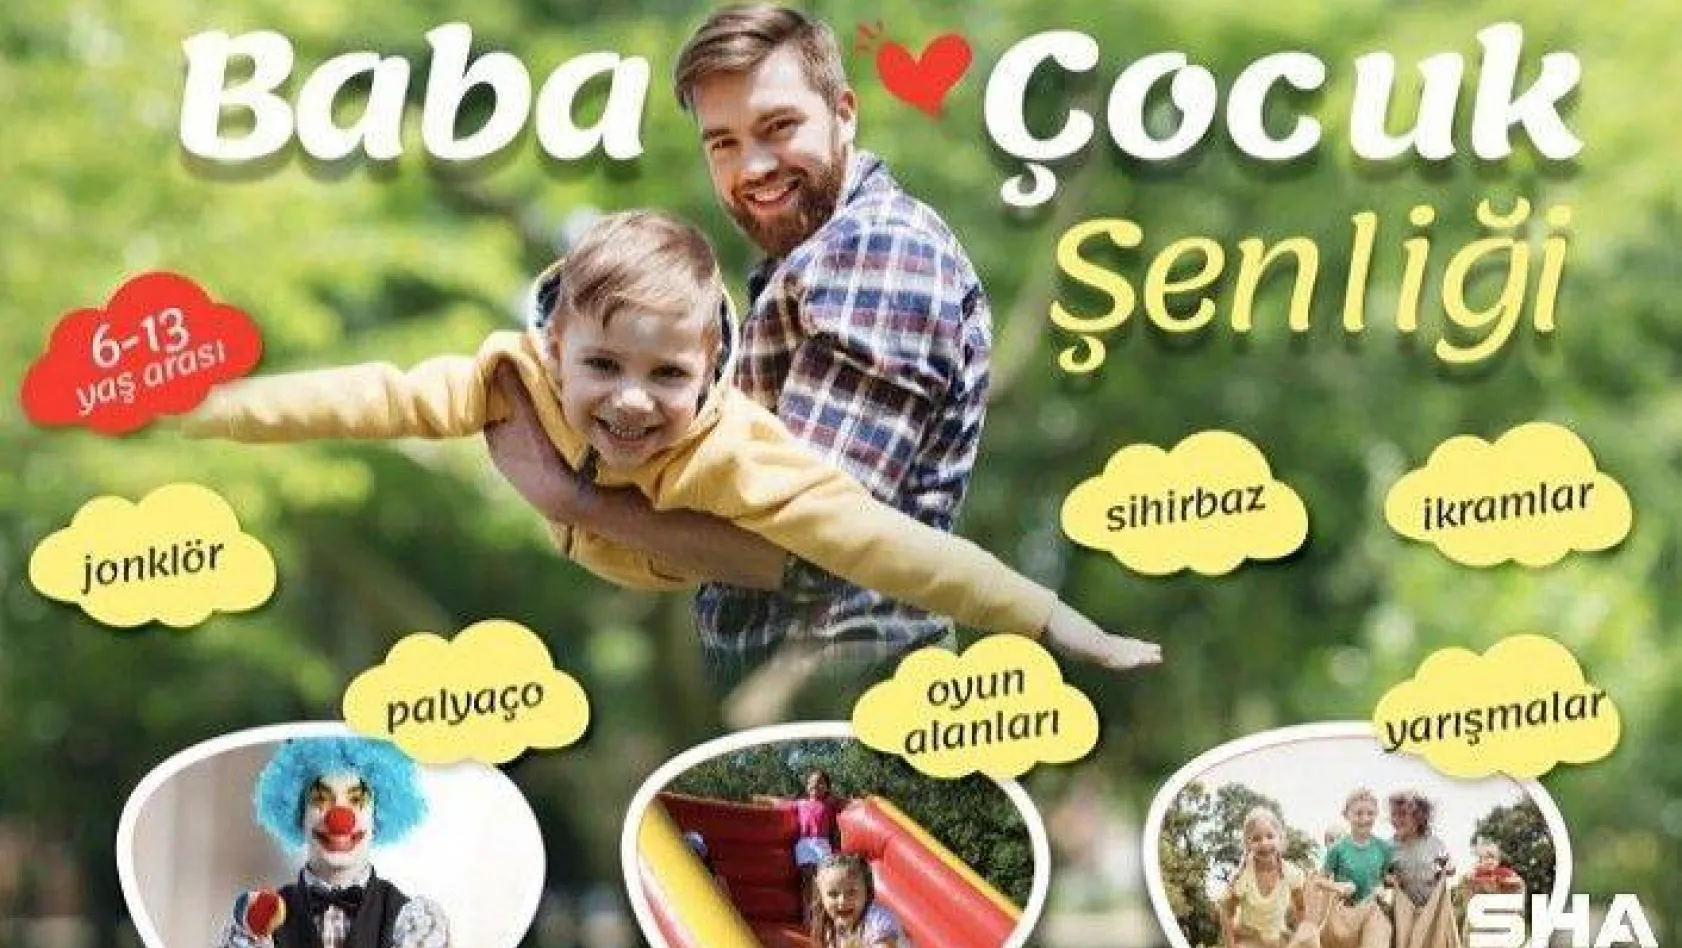 Silivri Belediyesi 'Baba-Çocuk Şenliği' Düzenliyor